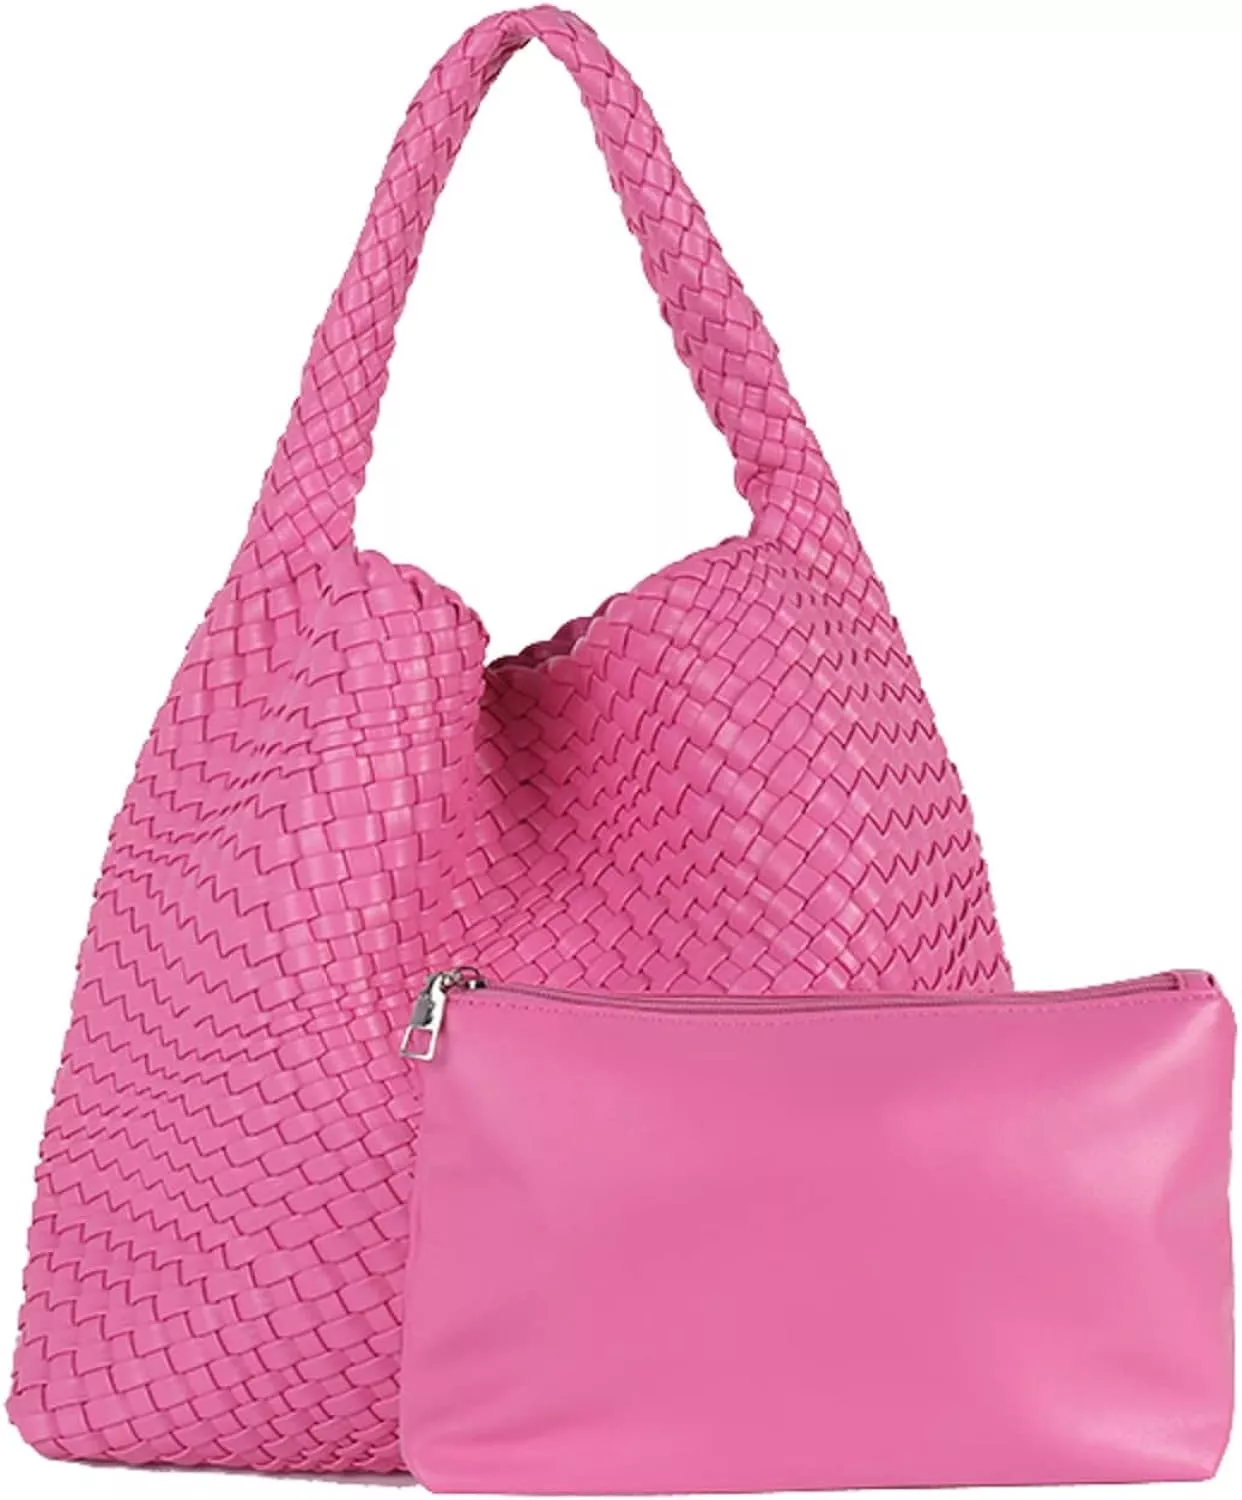 Sell your handbag today – The Lady Bag